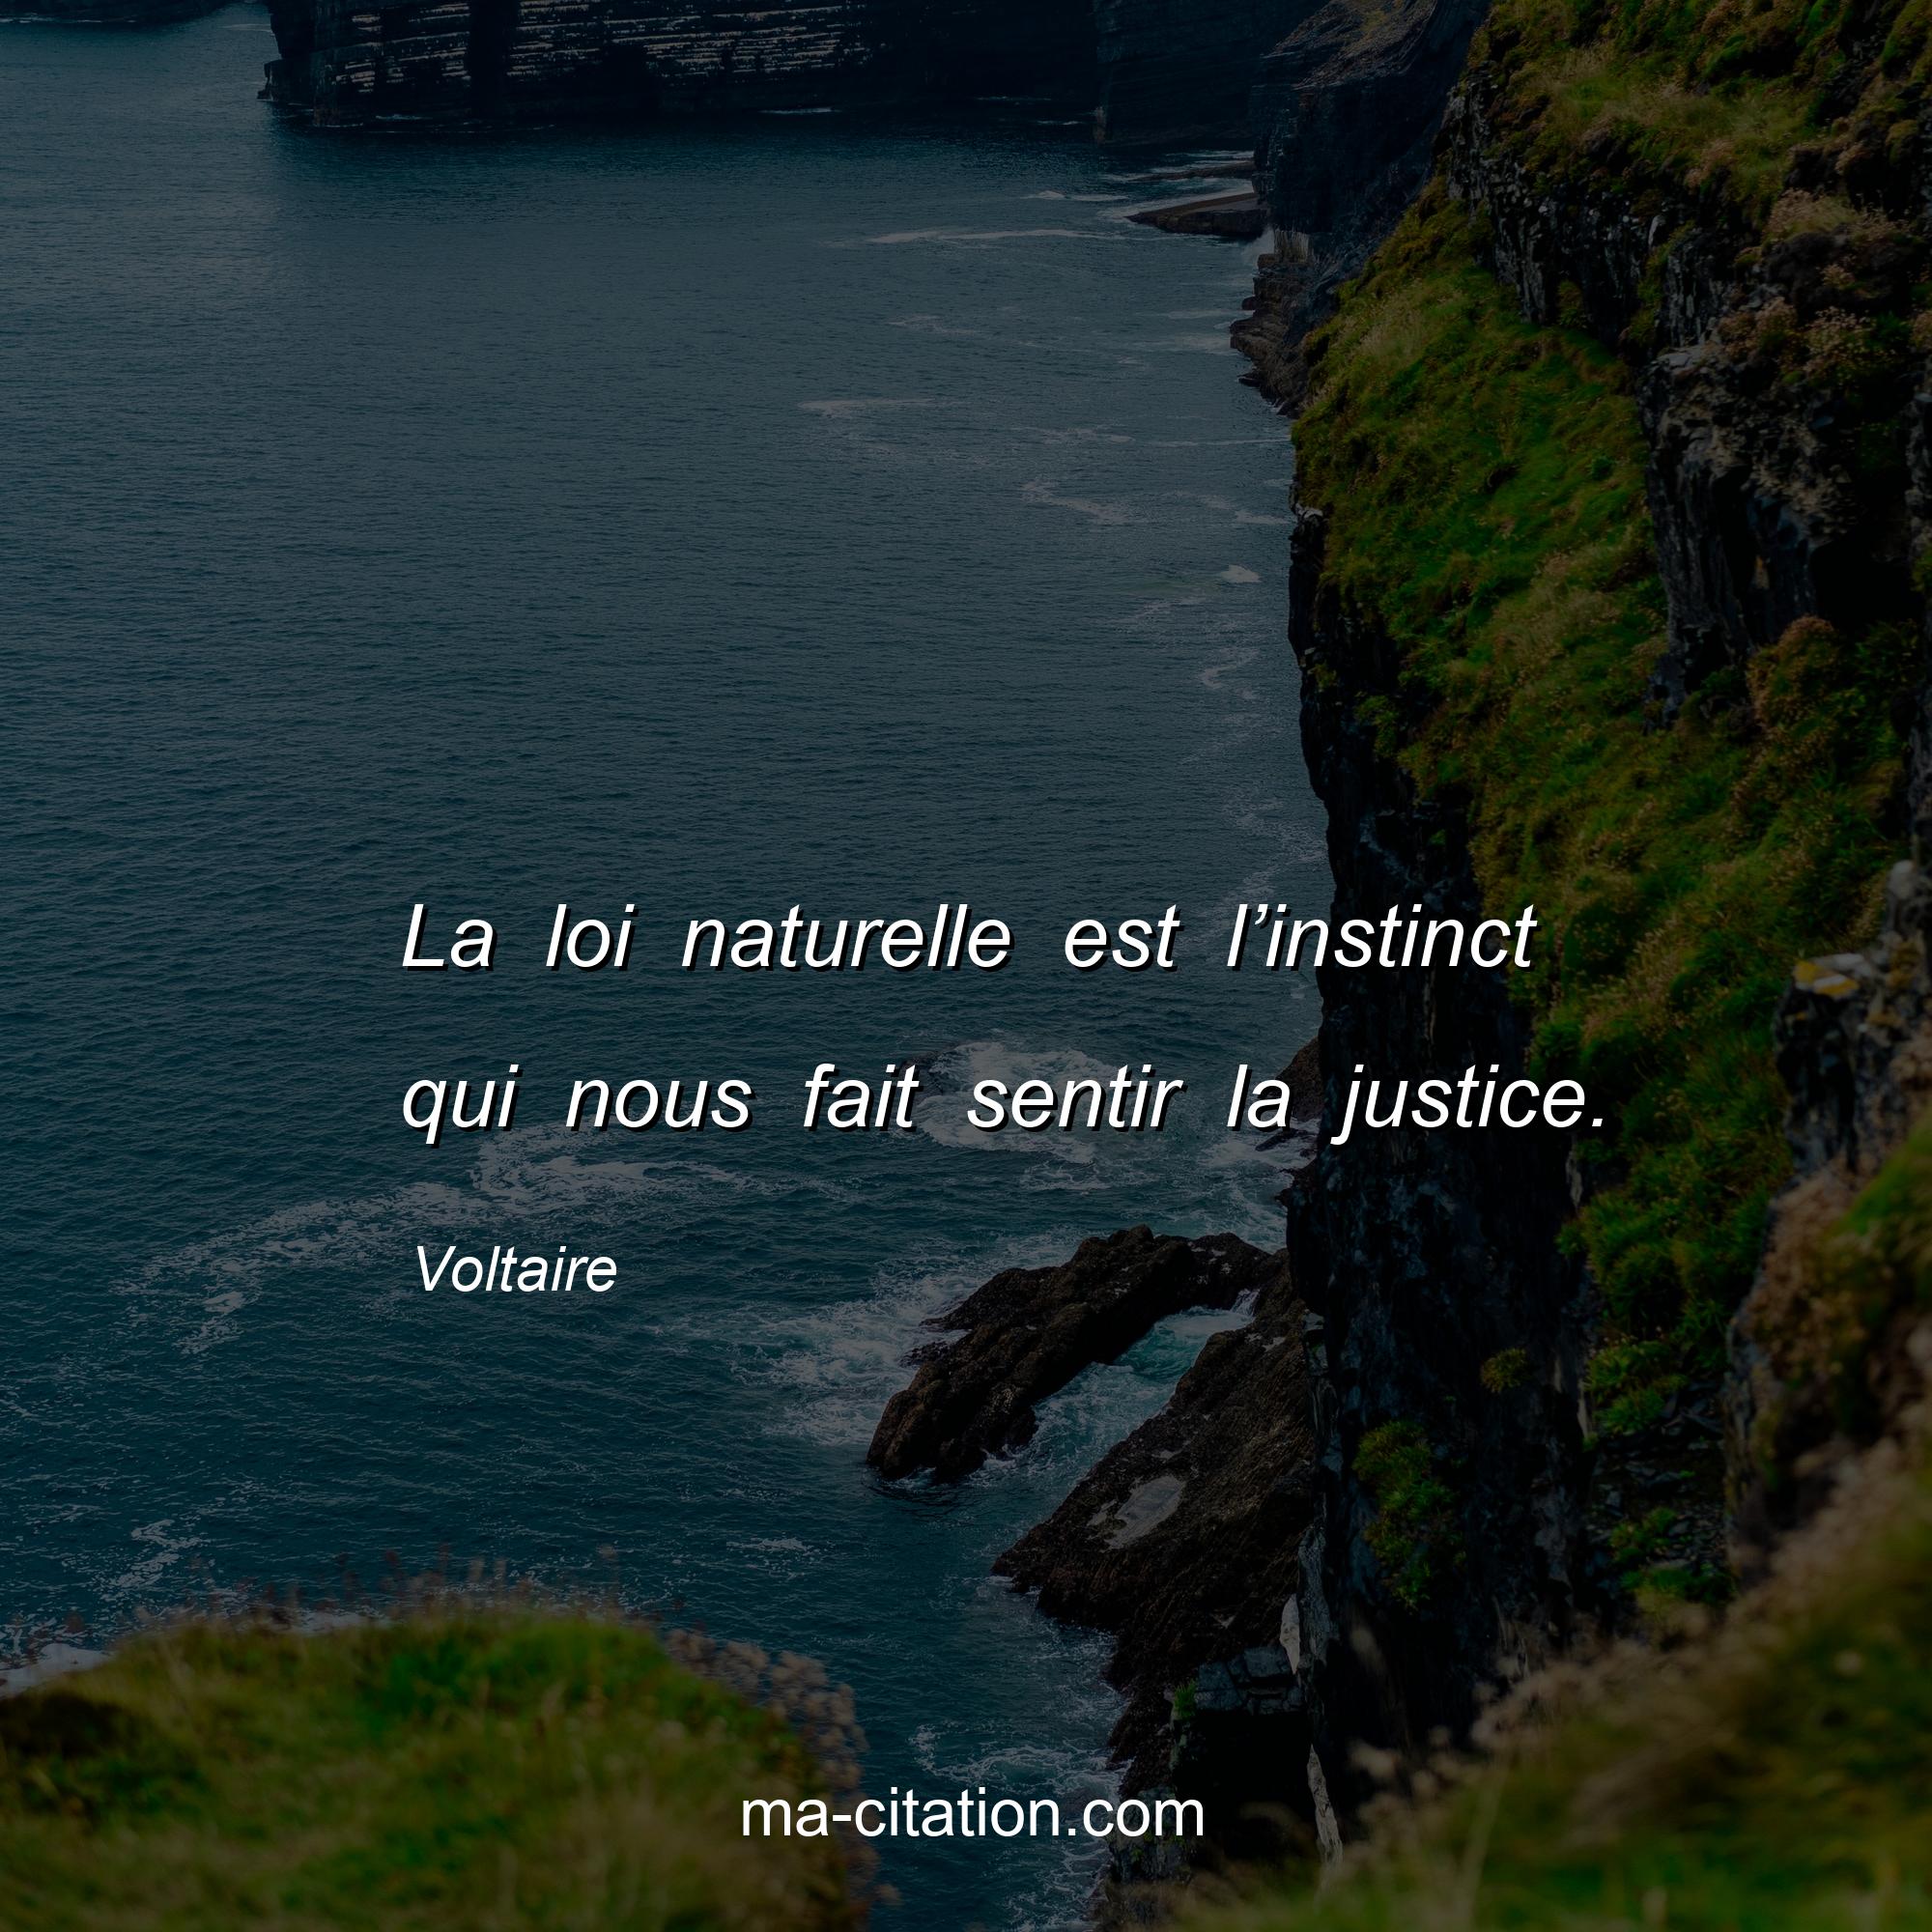 Voltaire : La loi naturelle est l’instinct qui nous fait sentir la justice.